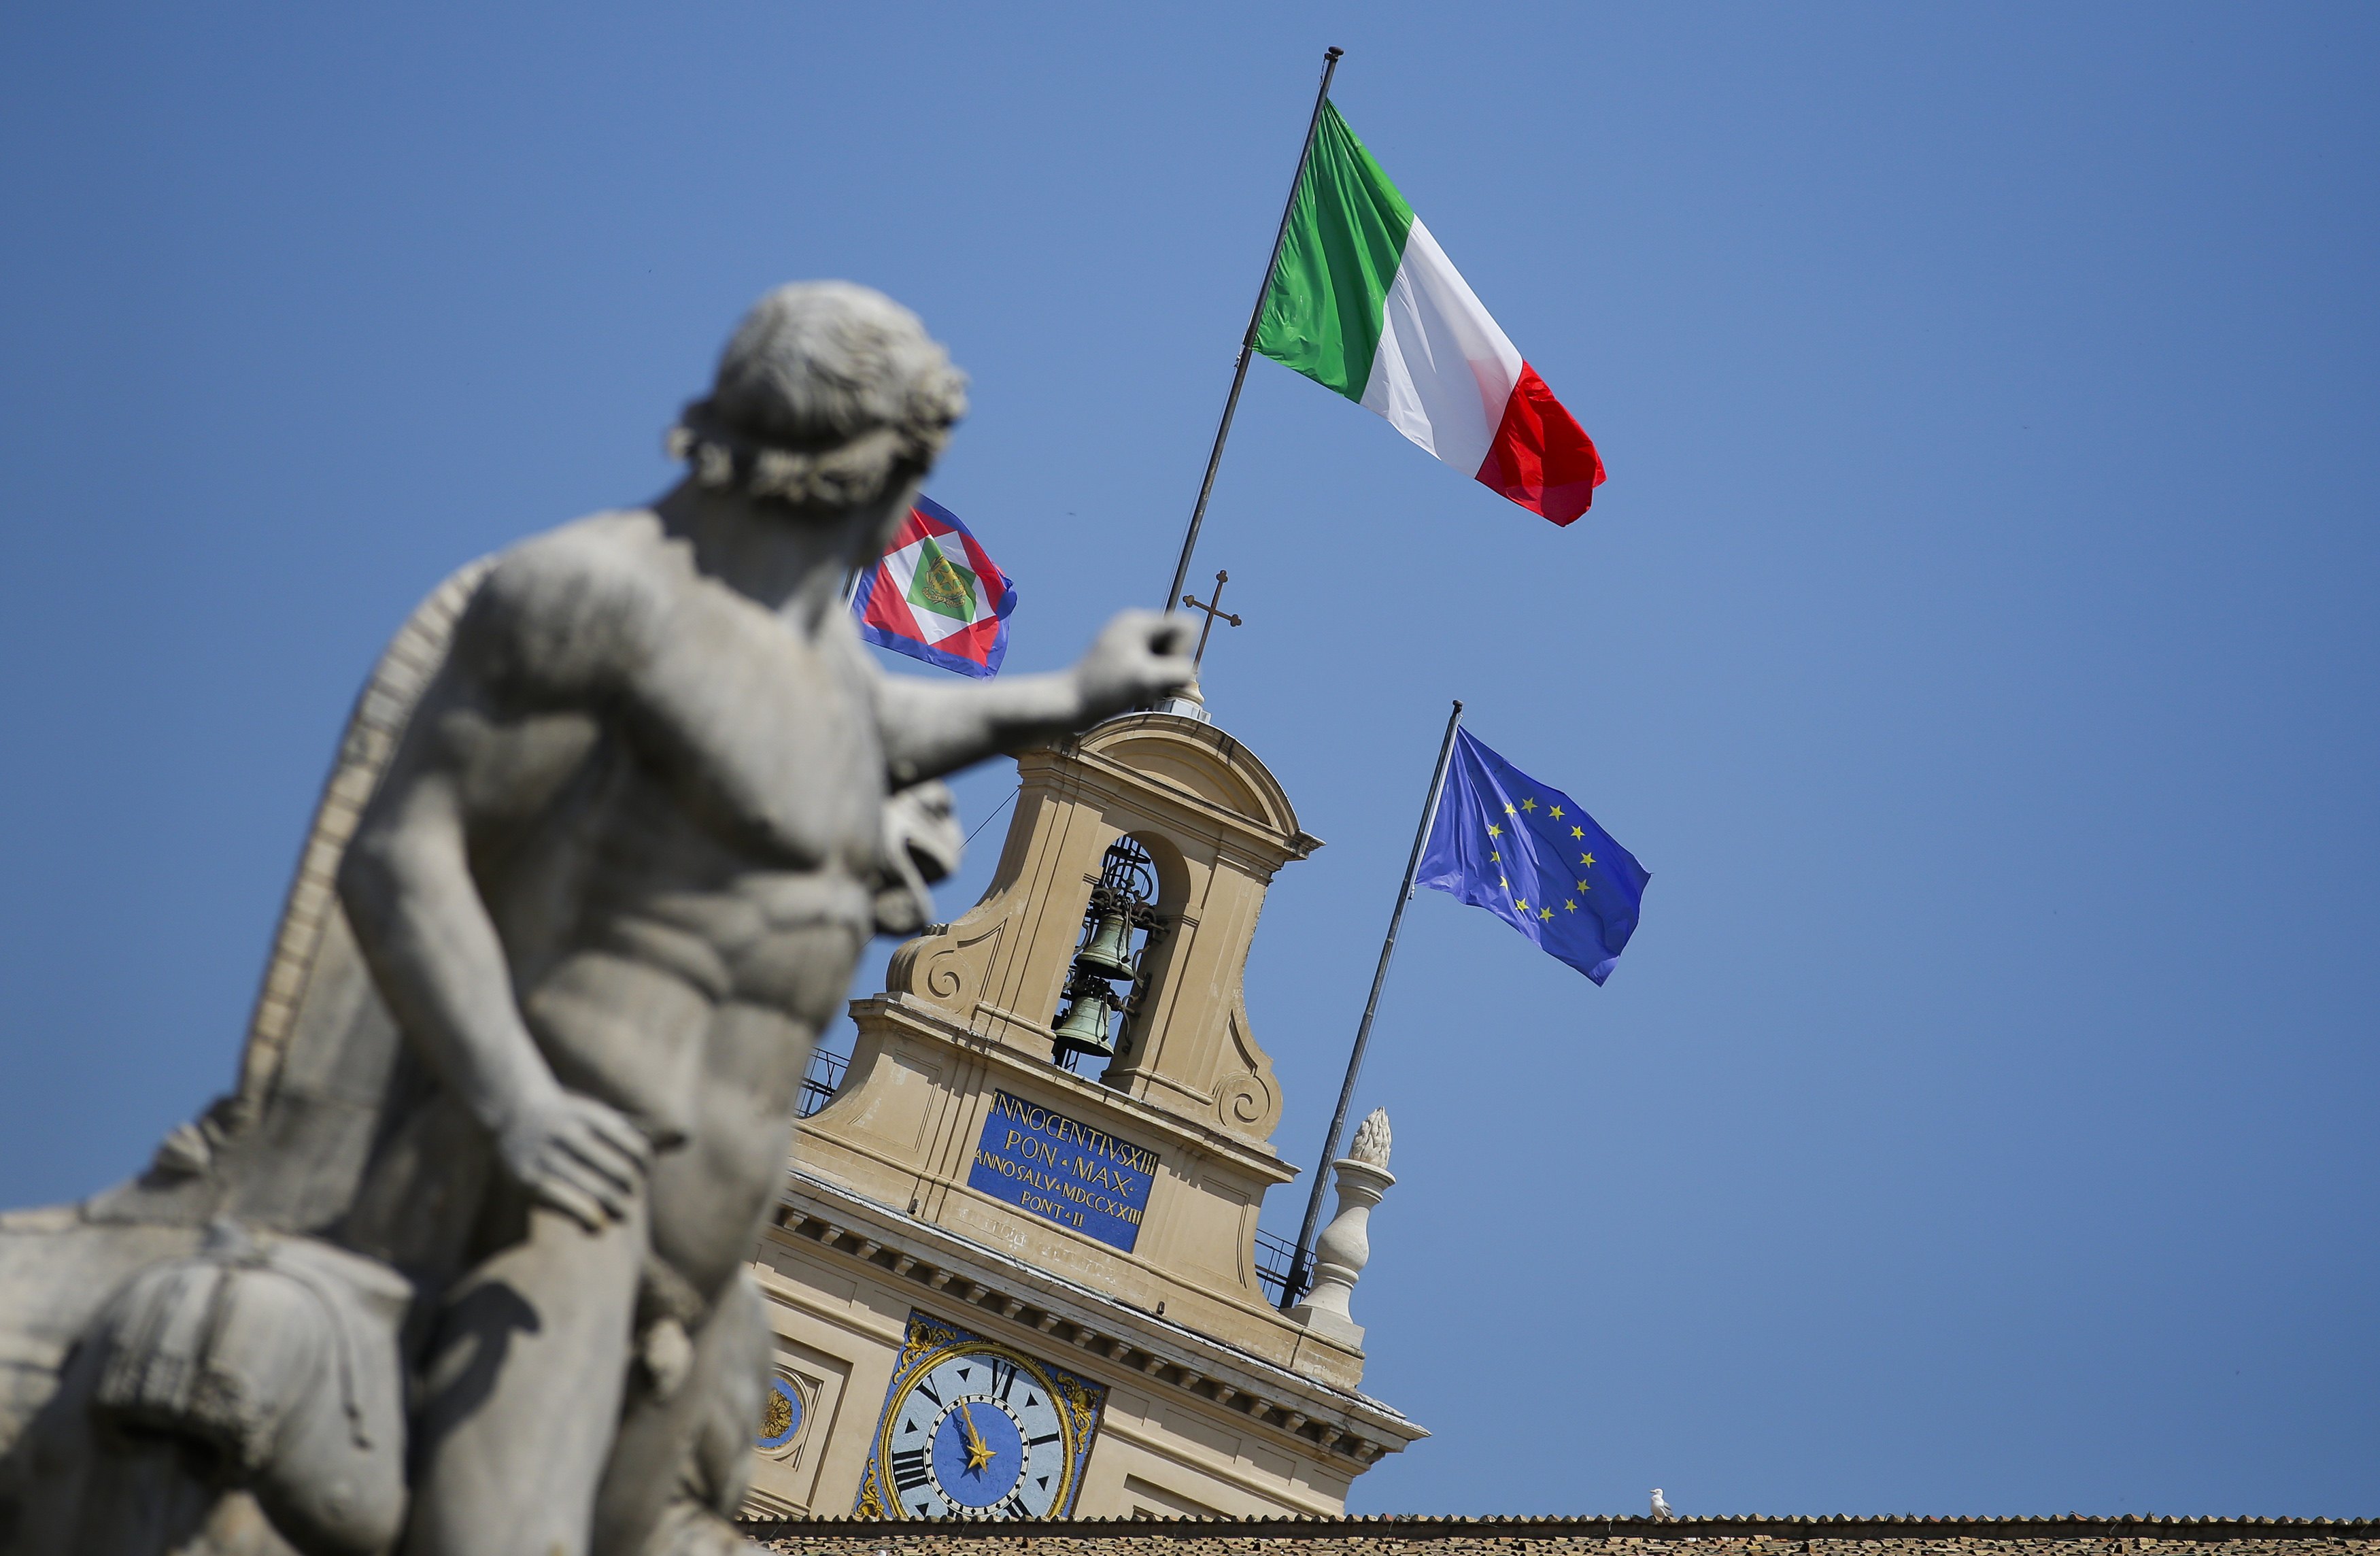 Ιταλία: Η ΕΕ καθηλωμένη στους αριθμούς, δείχνει ανοχή σε όποιον υψώνει τείχη